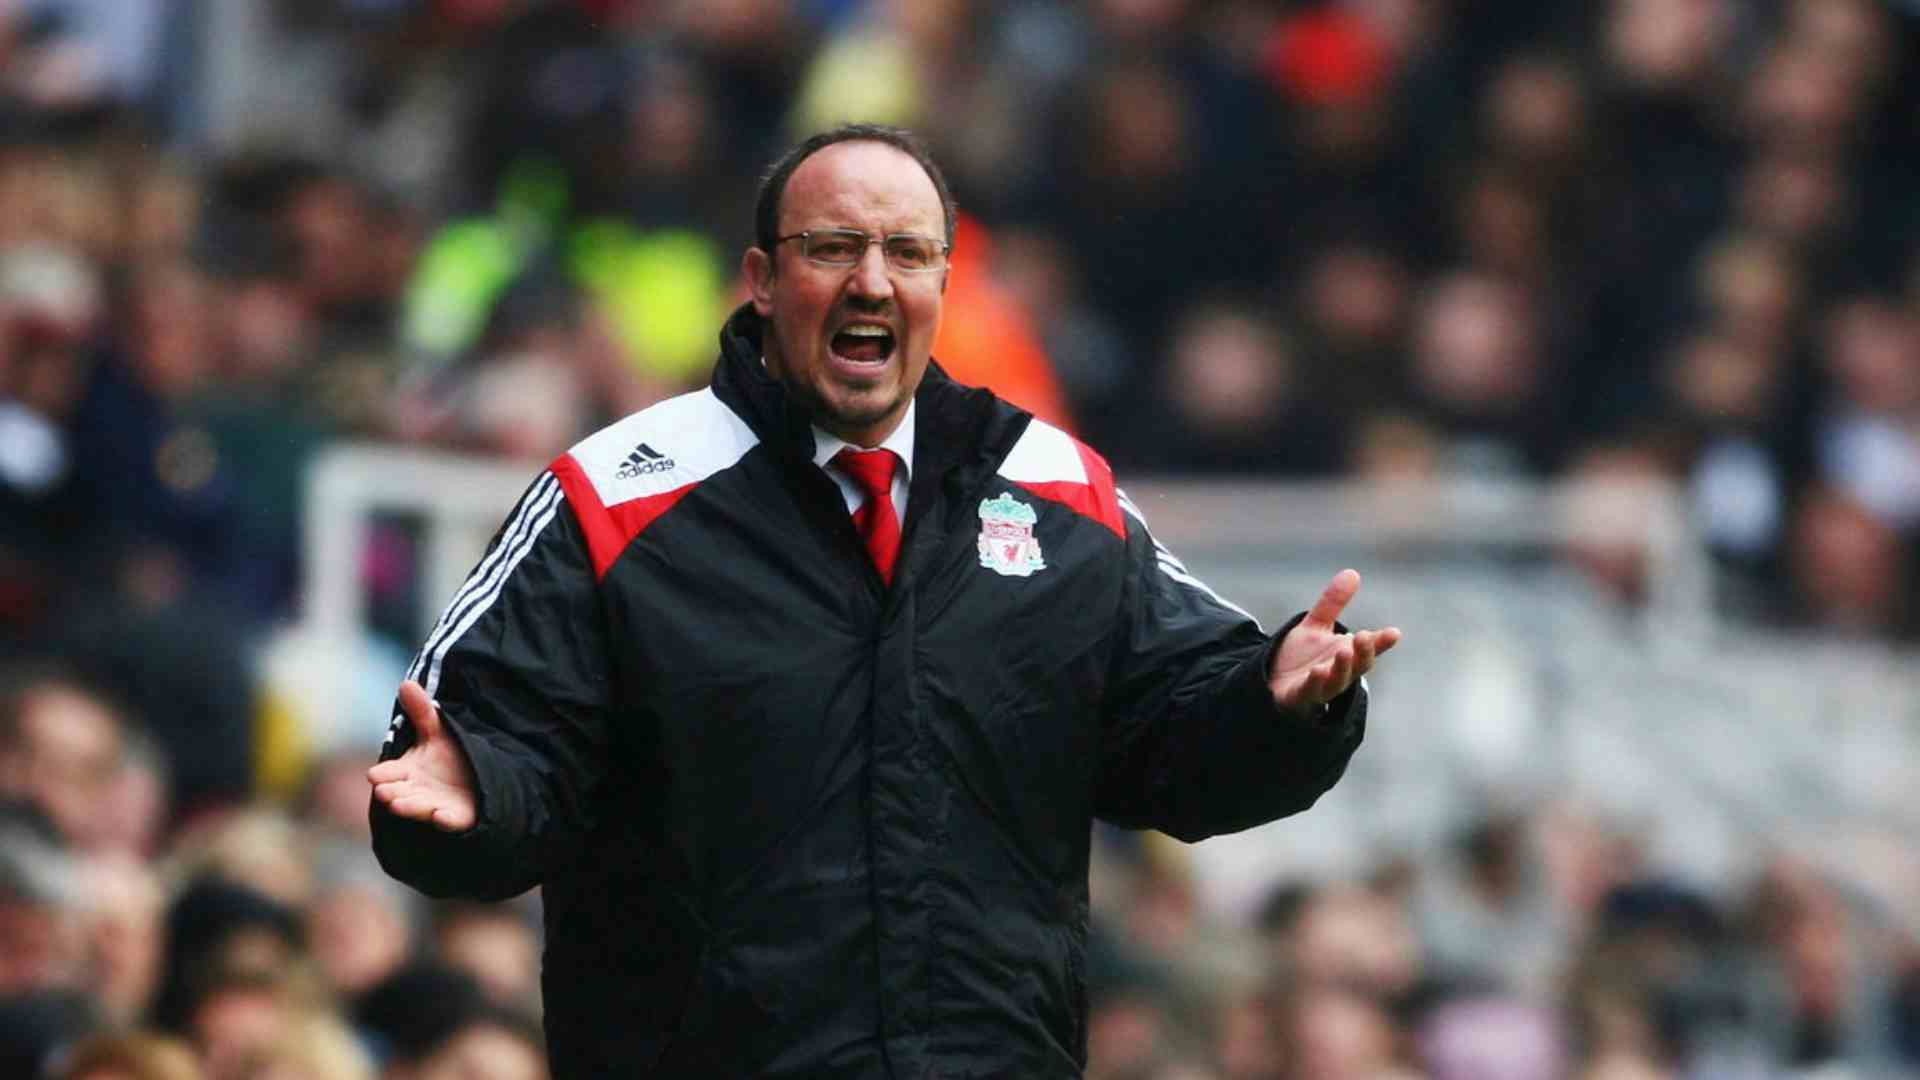 "Benitez era un codardo, lo odiavo". Il durissimo attacco dell'ex Liverpool